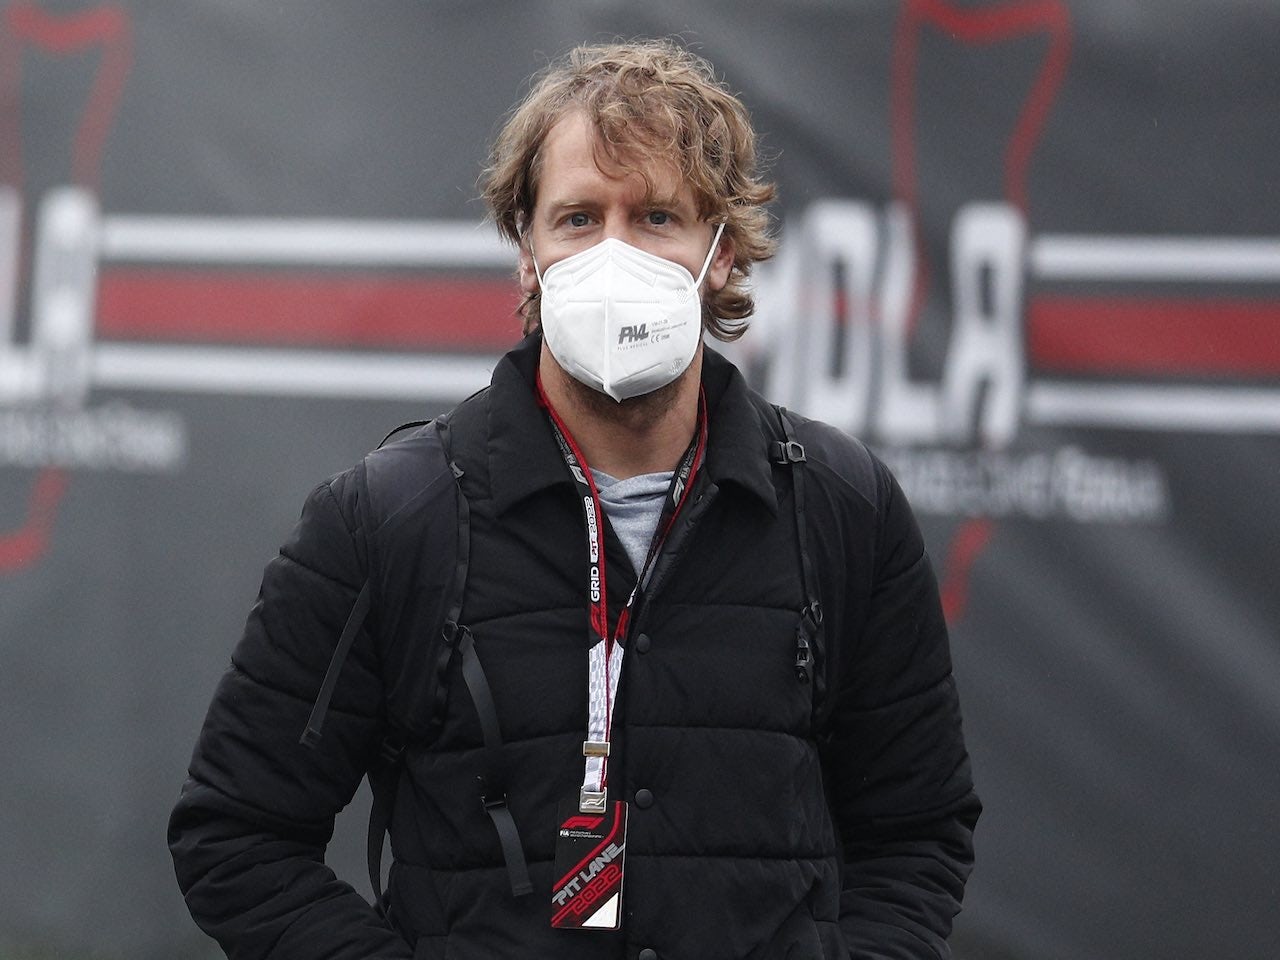 'Disastrous' Spanish GP predicted for Vettel